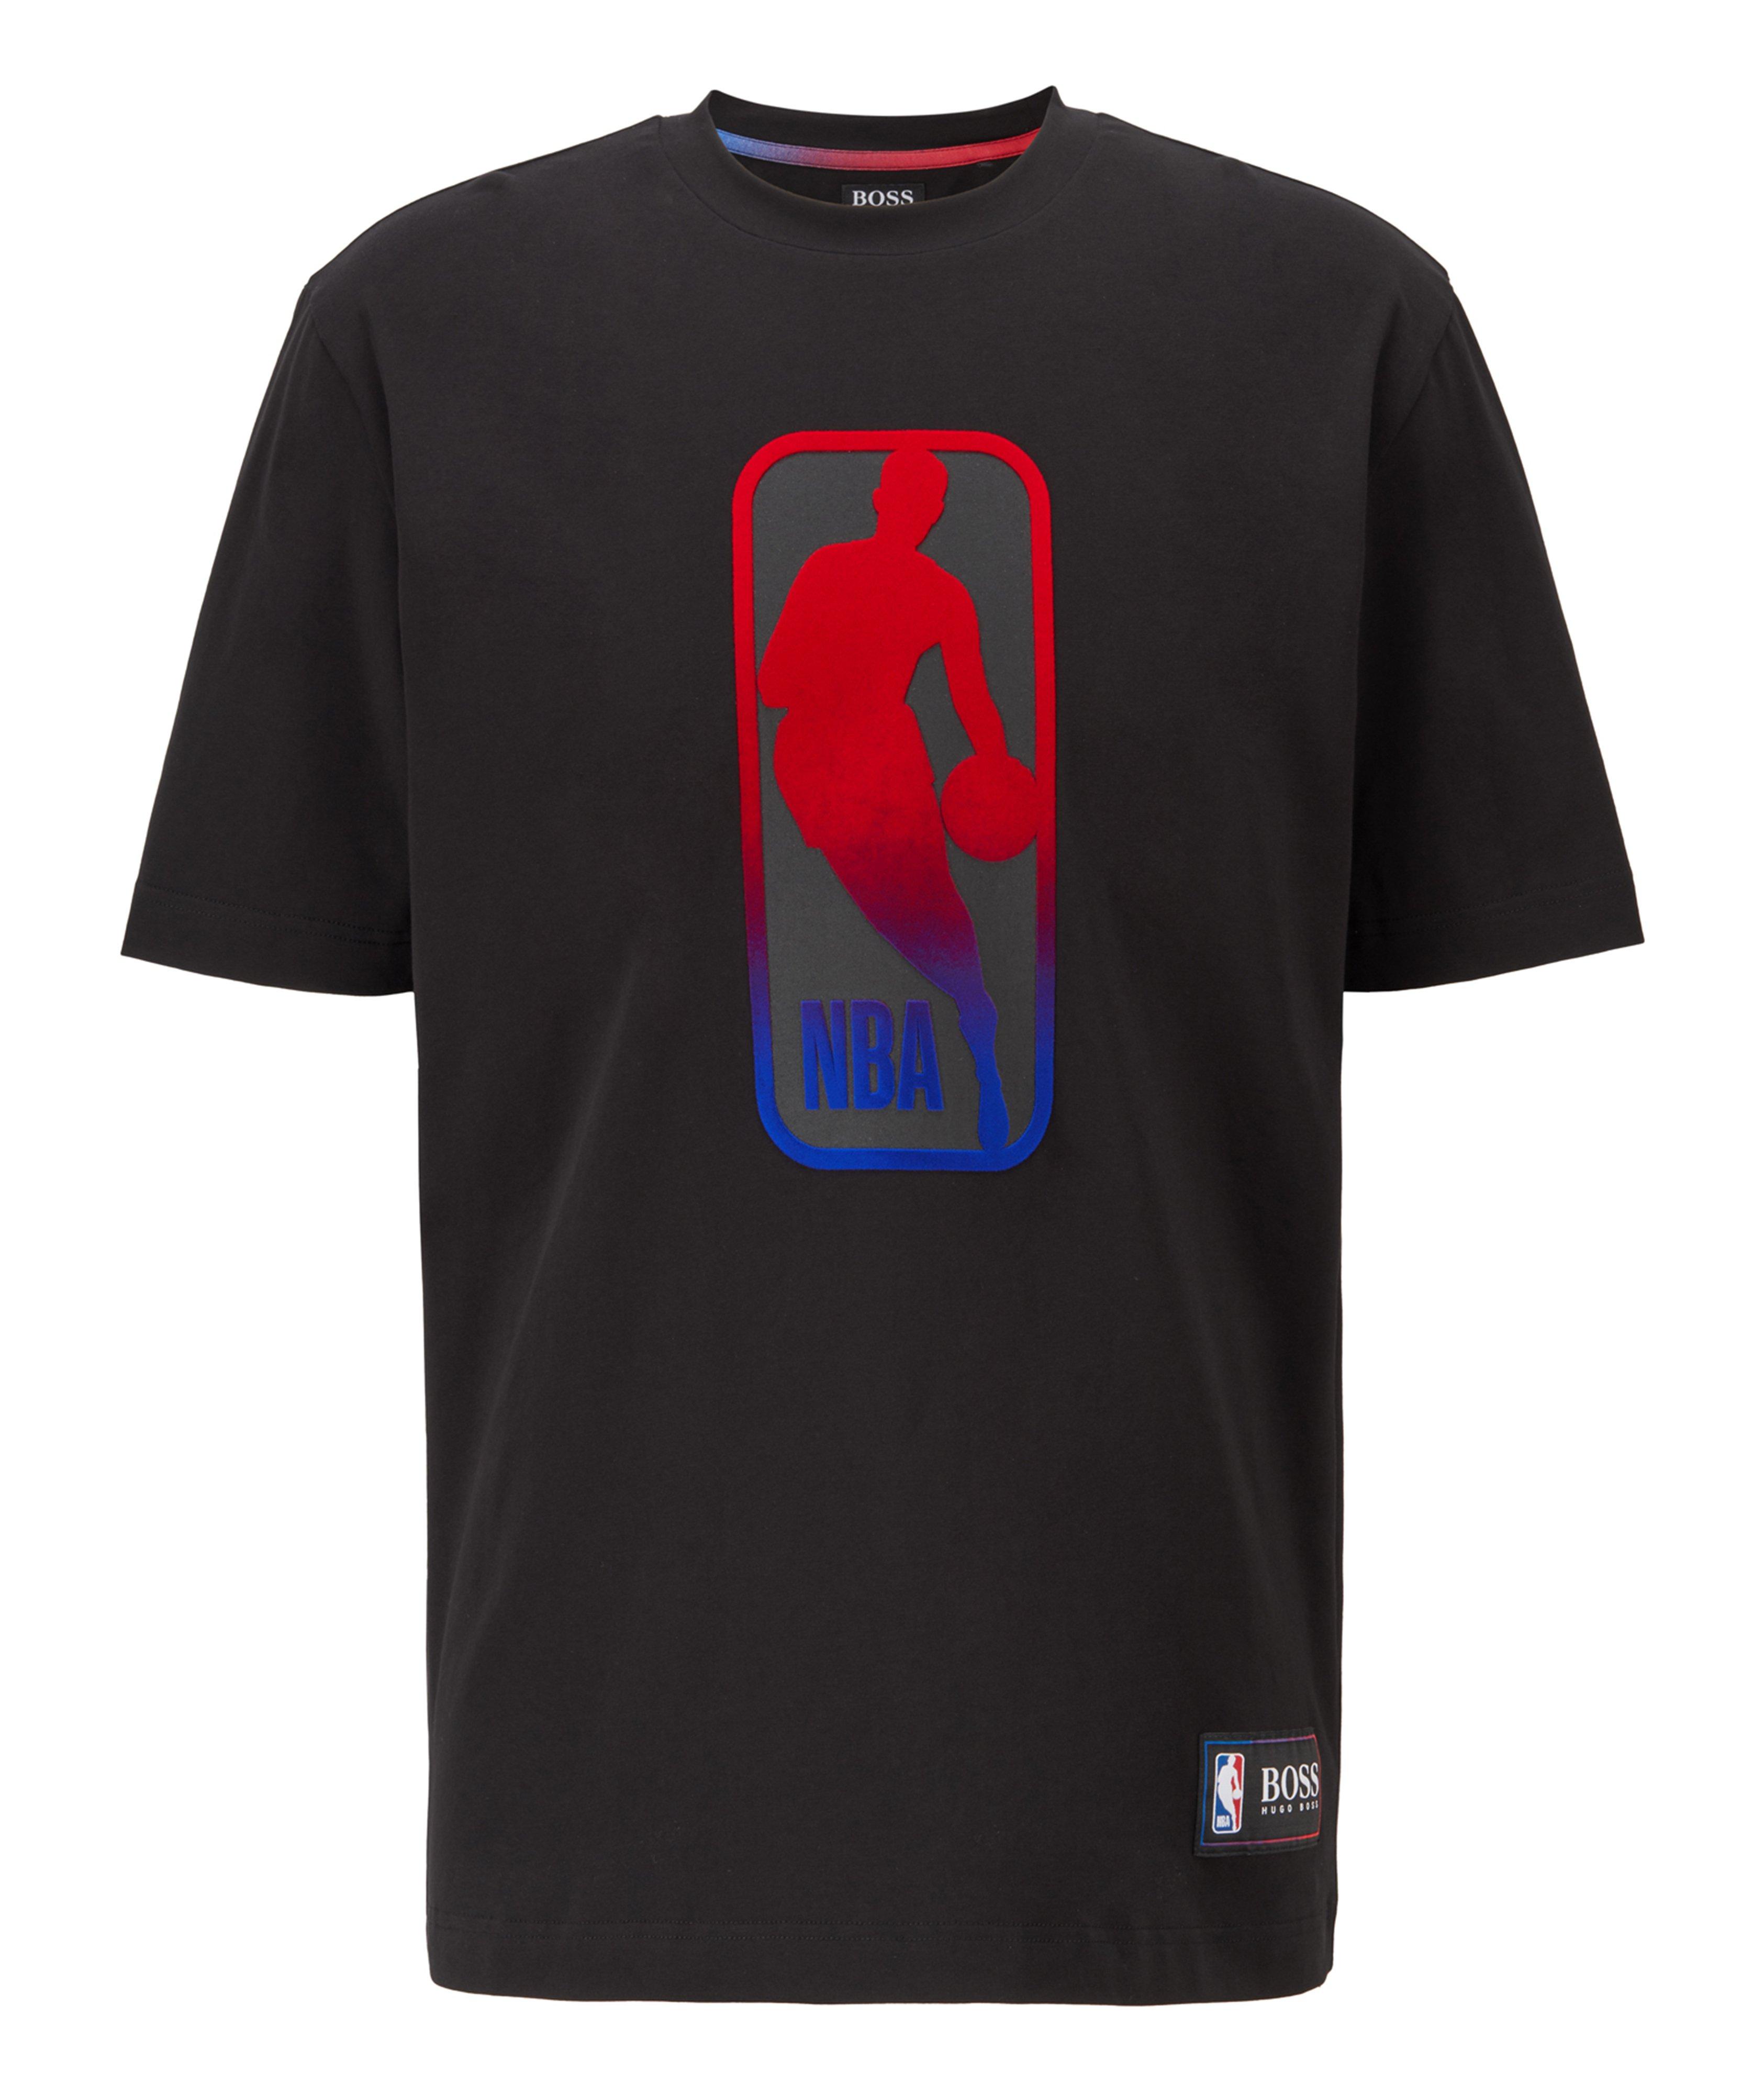 T-shirt imprimé en coton extensible, collection NBA image 0